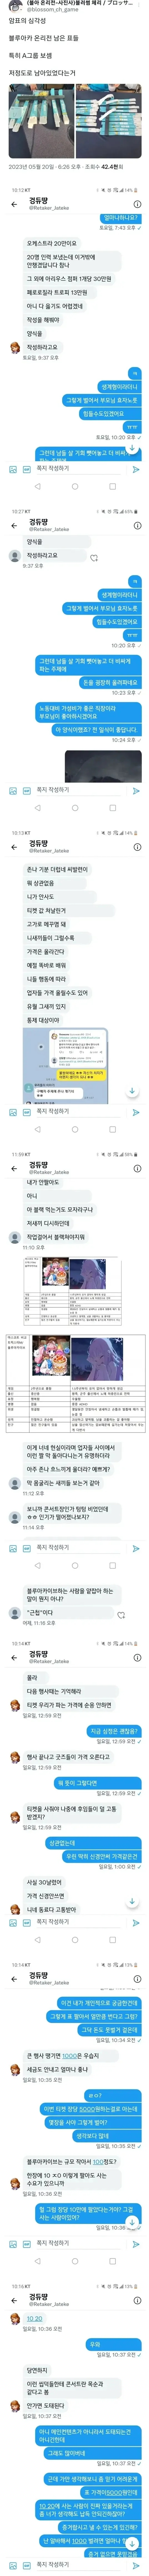 국세청 신고 들어간 되팔렘(feat. 블루아카이브)